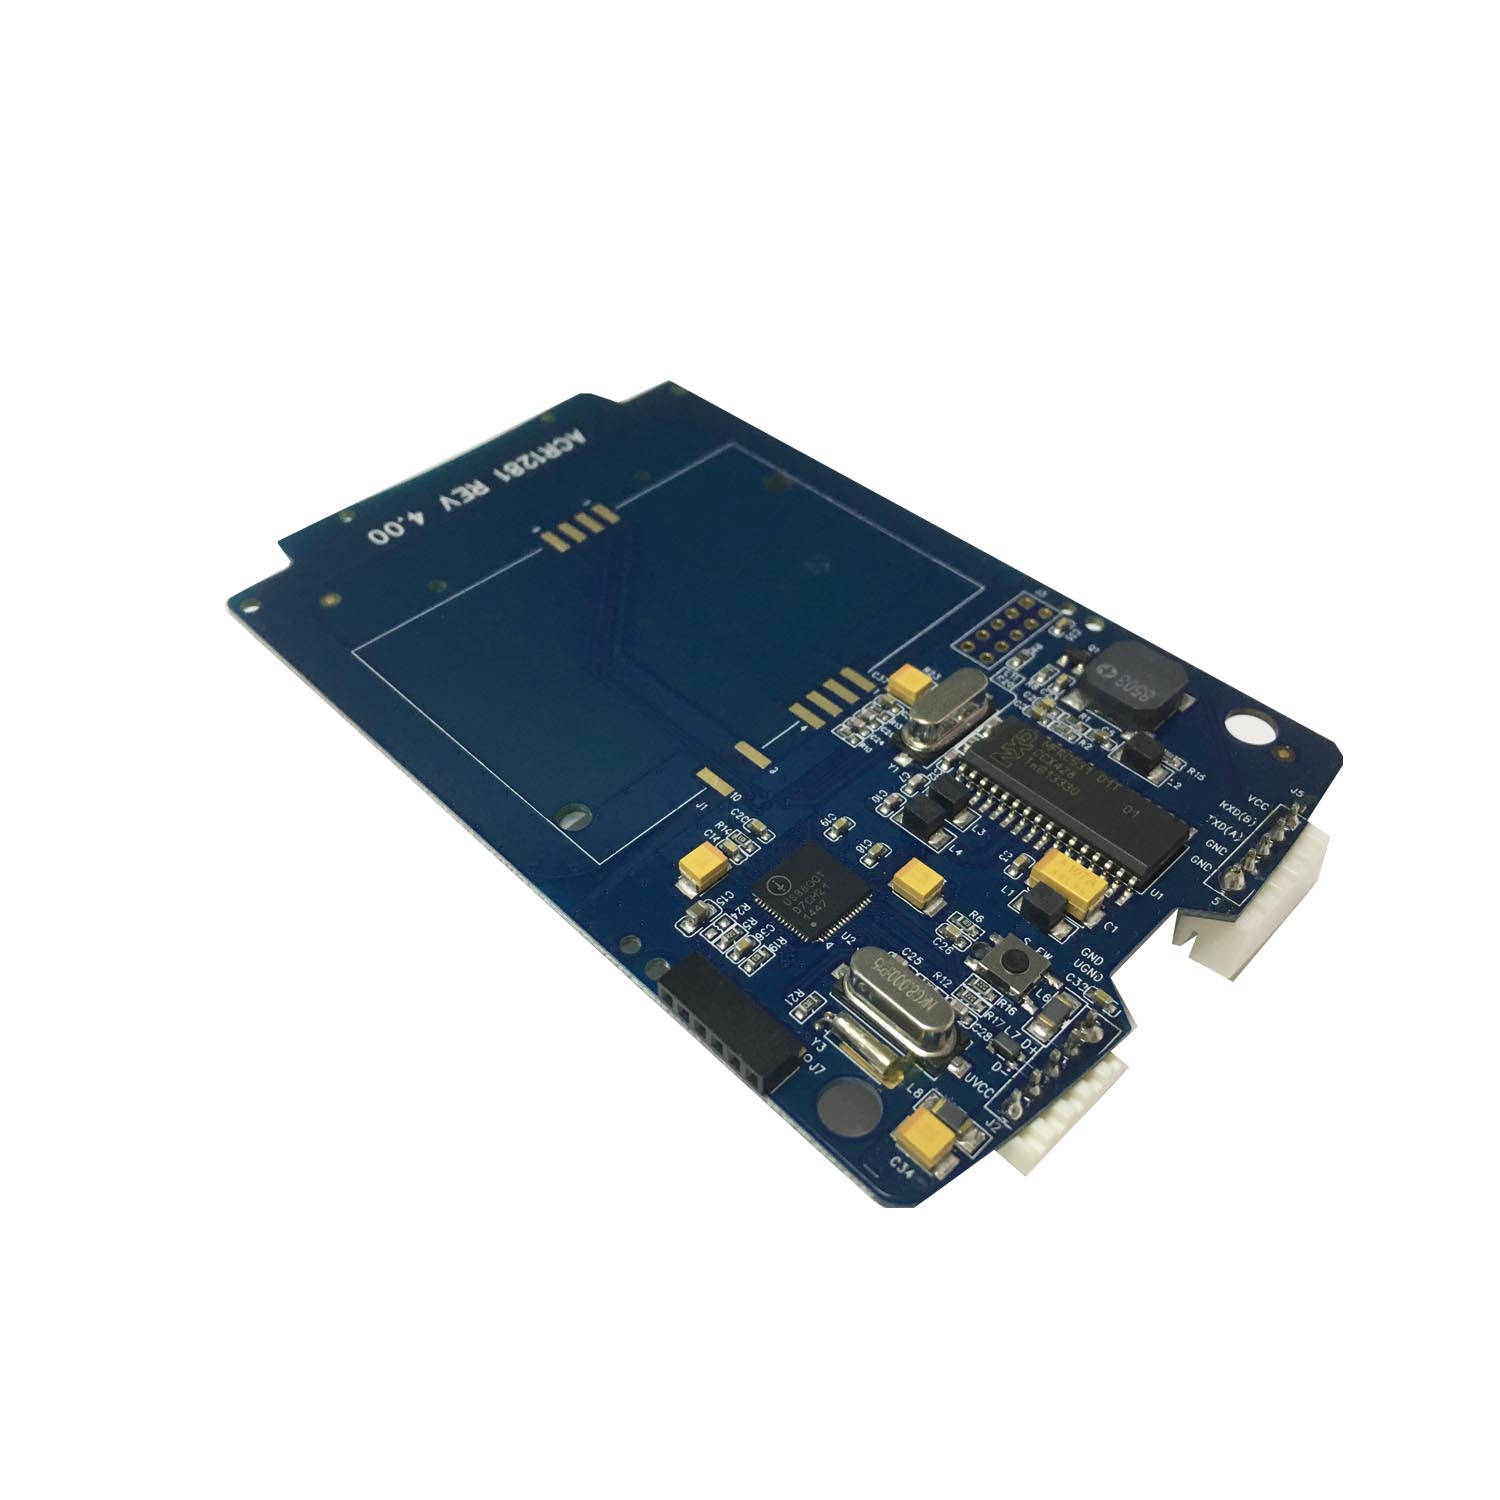 13.56 MHz MIFARE USB 非接触式读卡器模块 ACM1281U-C7